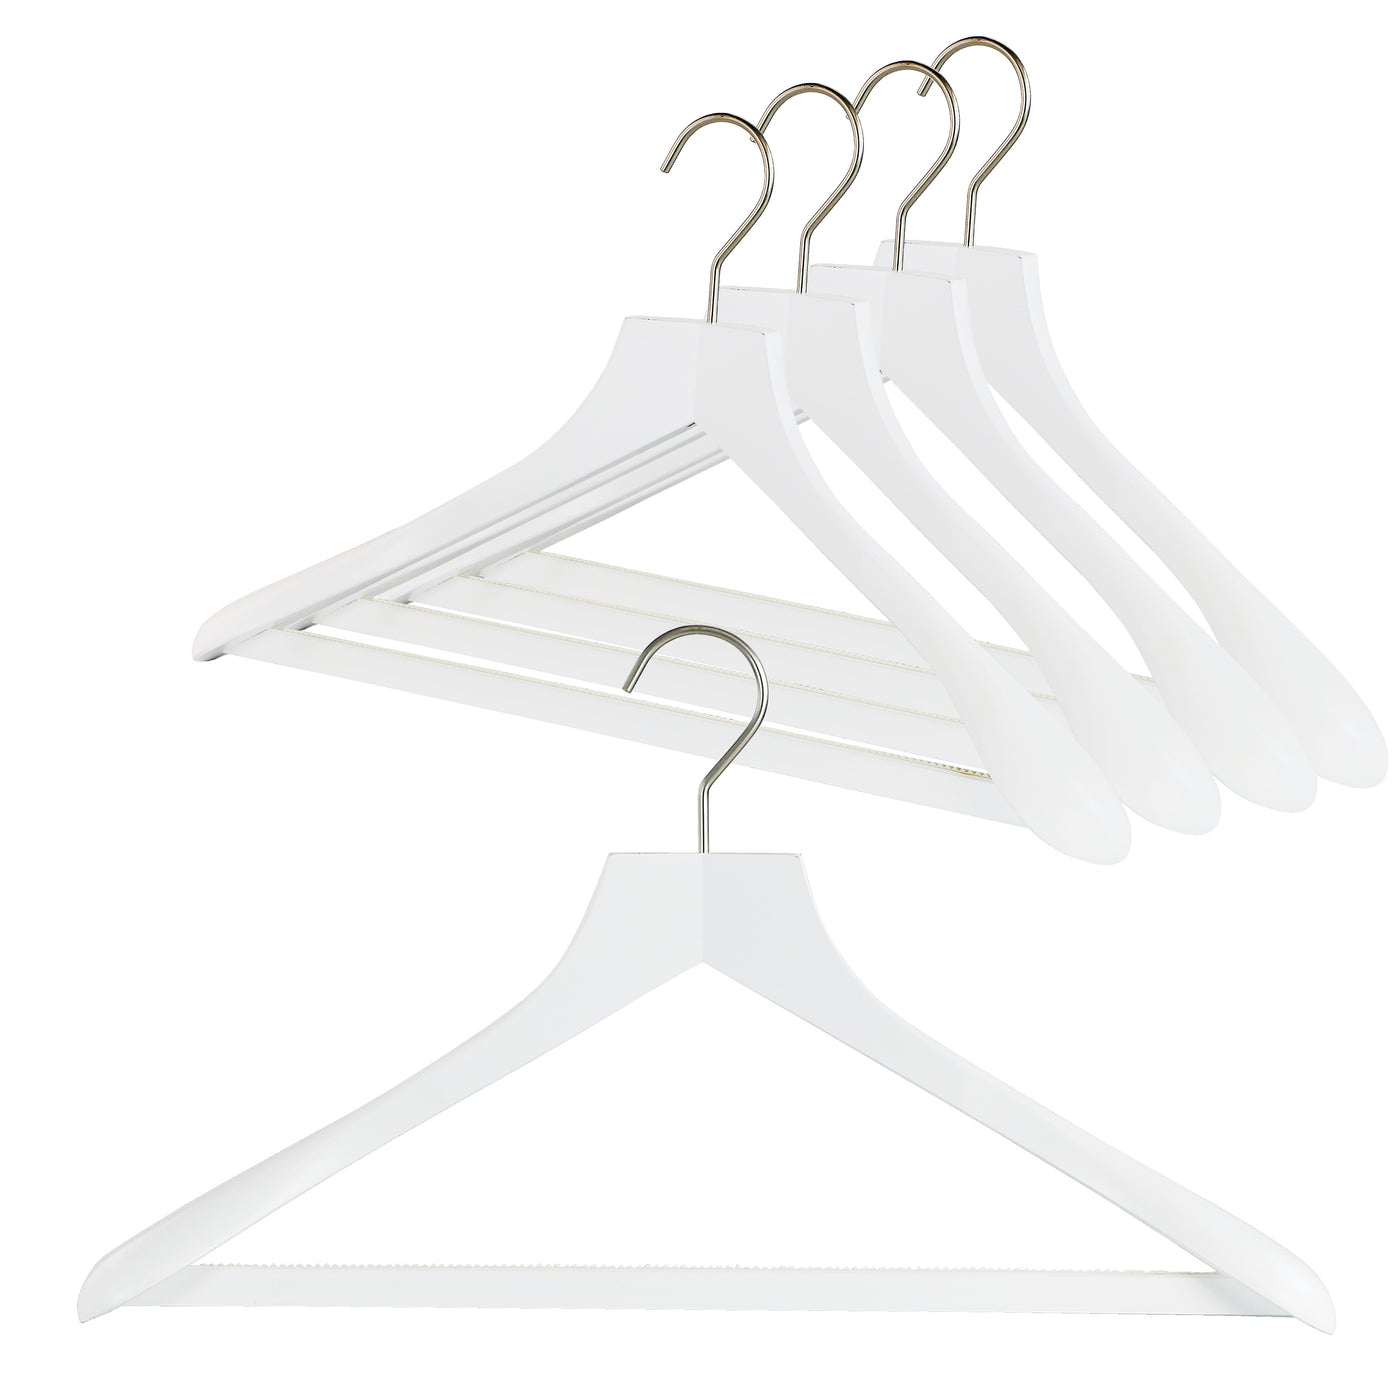 International Hanger, White Wood Suit Hanger w/Bar and Chrome Hook